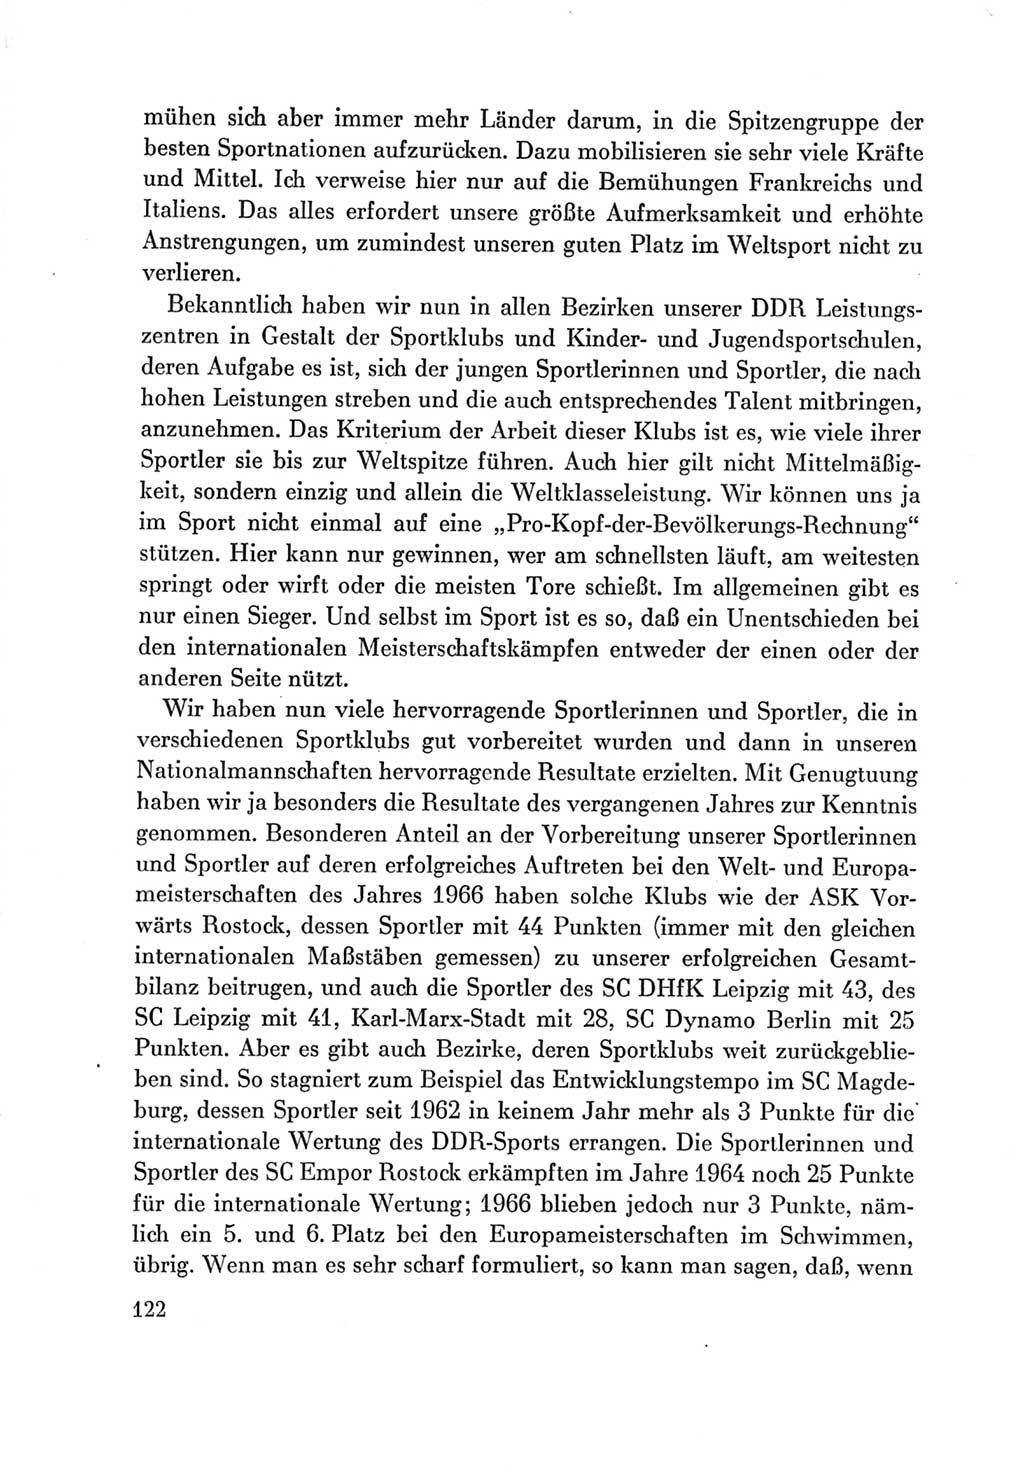 Protokoll der Verhandlungen des Ⅶ. Parteitages der Sozialistischen Einheitspartei Deutschlands (SED) [Deutsche Demokratische Republik (DDR)] 1967, Band Ⅲ, Seite 122 (Prot. Verh. Ⅶ. PT SED DDR 1967, Bd. Ⅲ, S. 122)